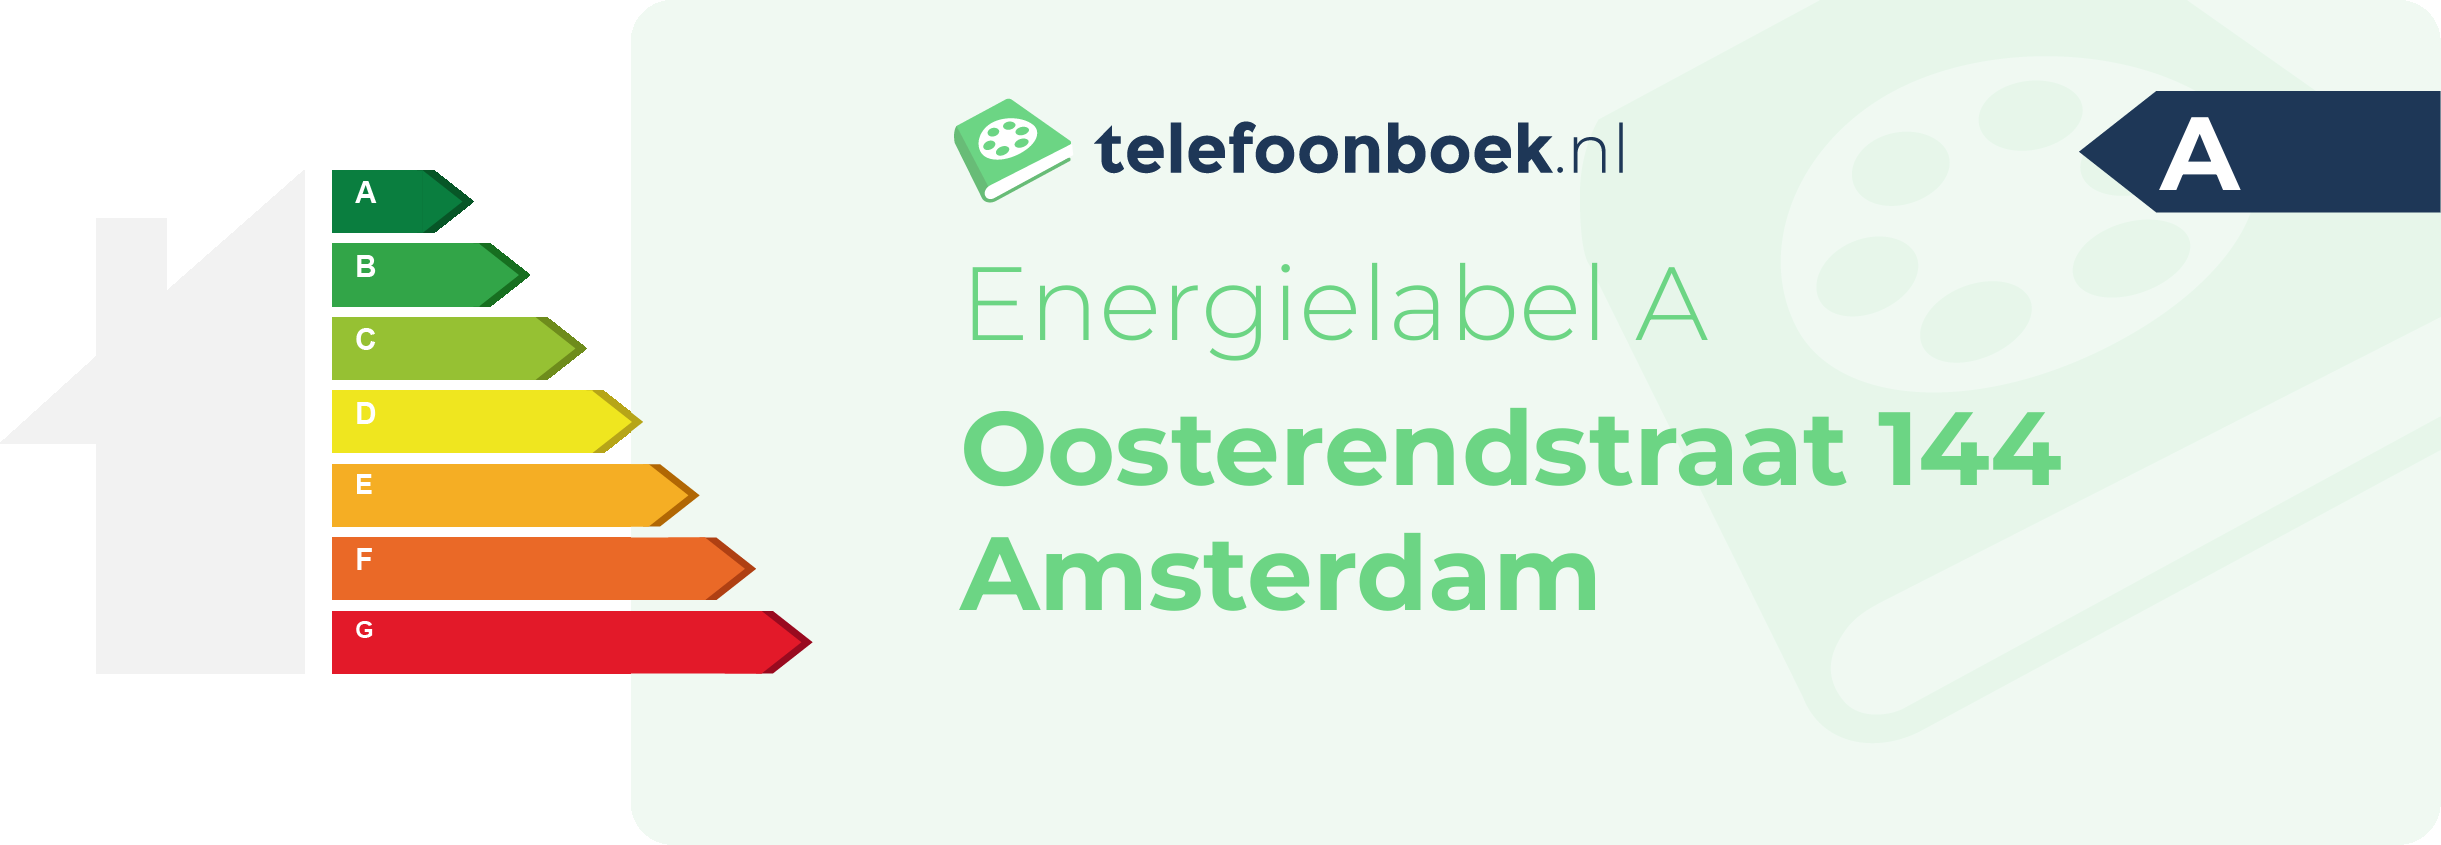 Energielabel Oosterendstraat 144 Amsterdam